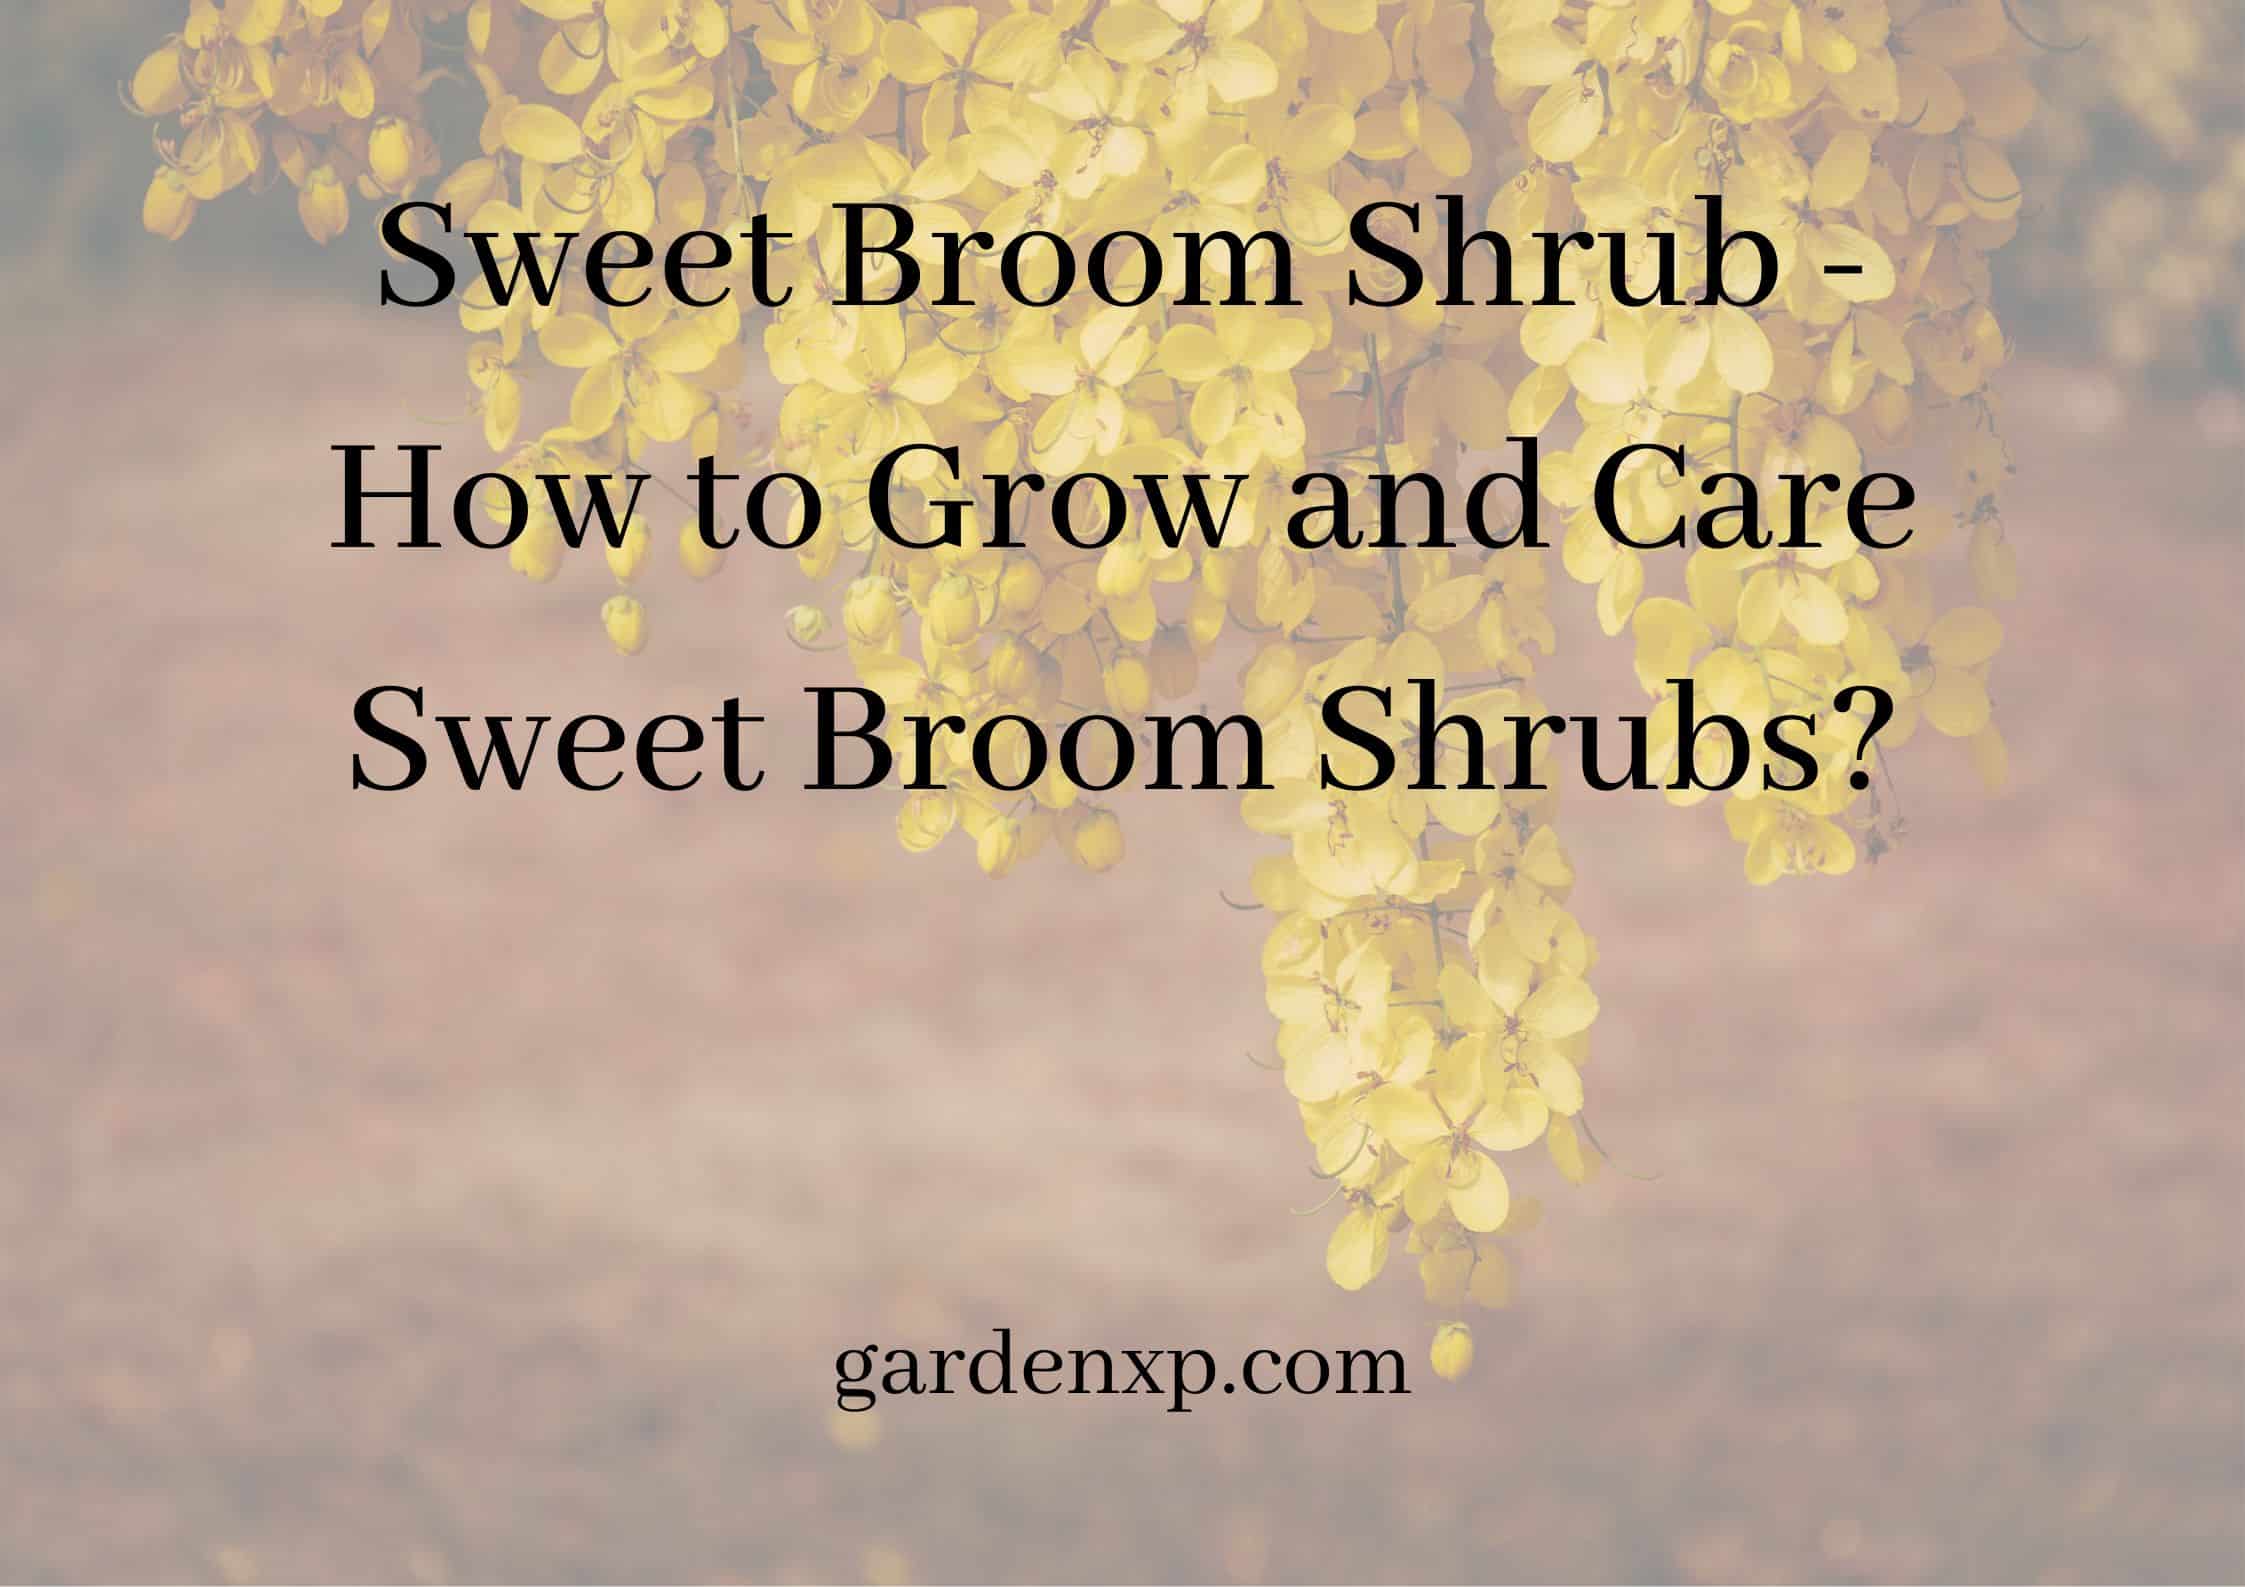 Sweet Broom Shrubs - How to Grow and Care Sweet Broom Shrubs?